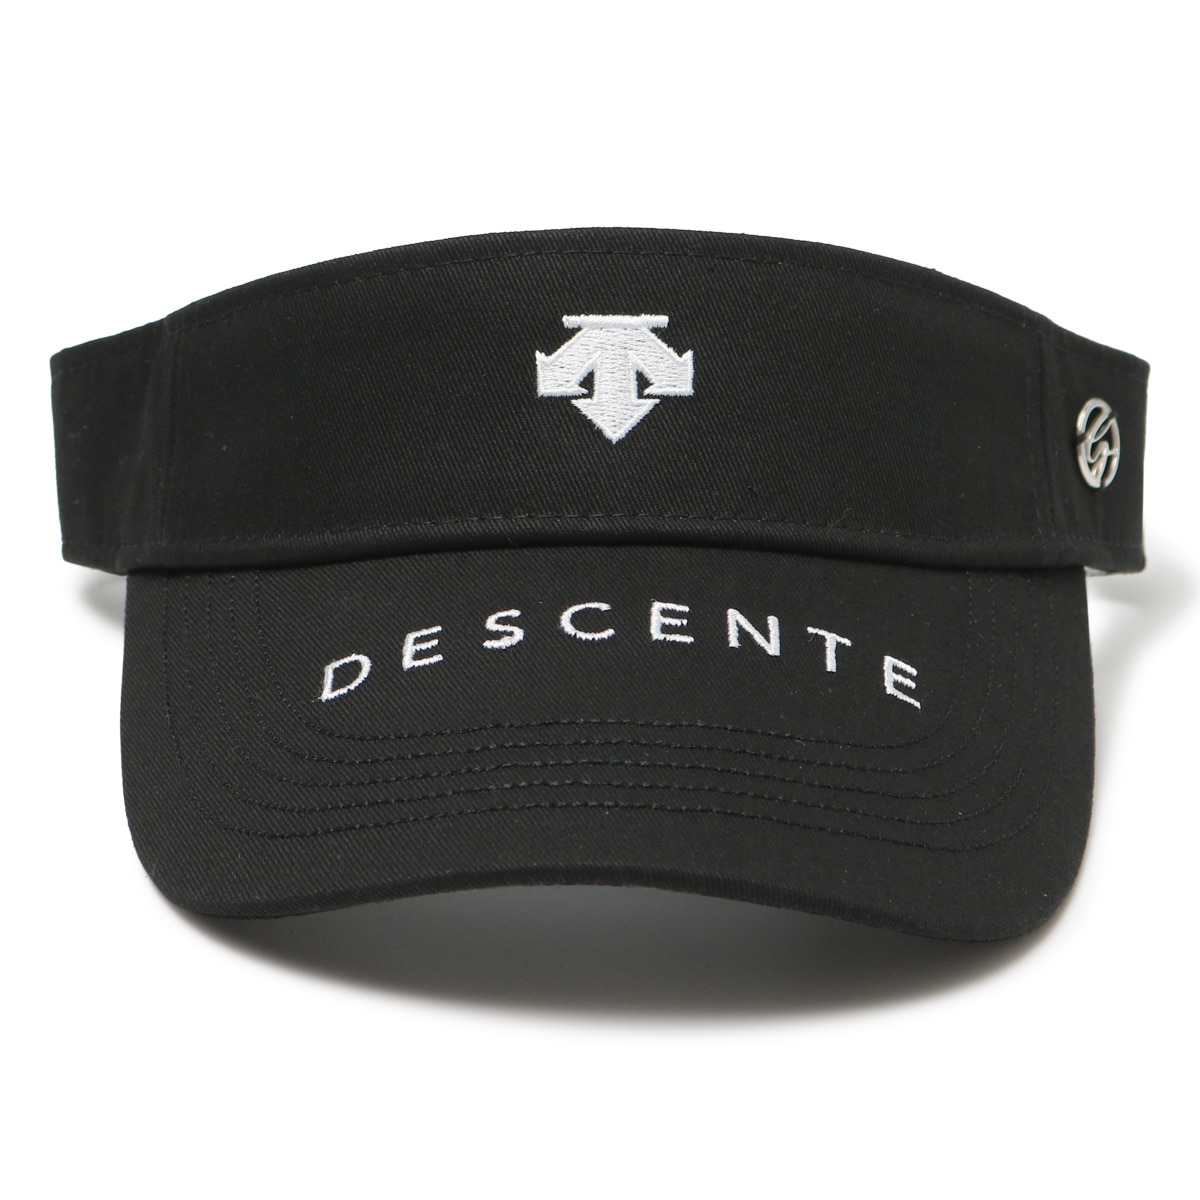 デサント ゴルフ サンバイザー 帽子 ロゴ刺繍 レディース DGCVJC50 DESCENTE Move Sport 吸汗速乾 手洗い可 抗菌防臭  サイズ調節可能